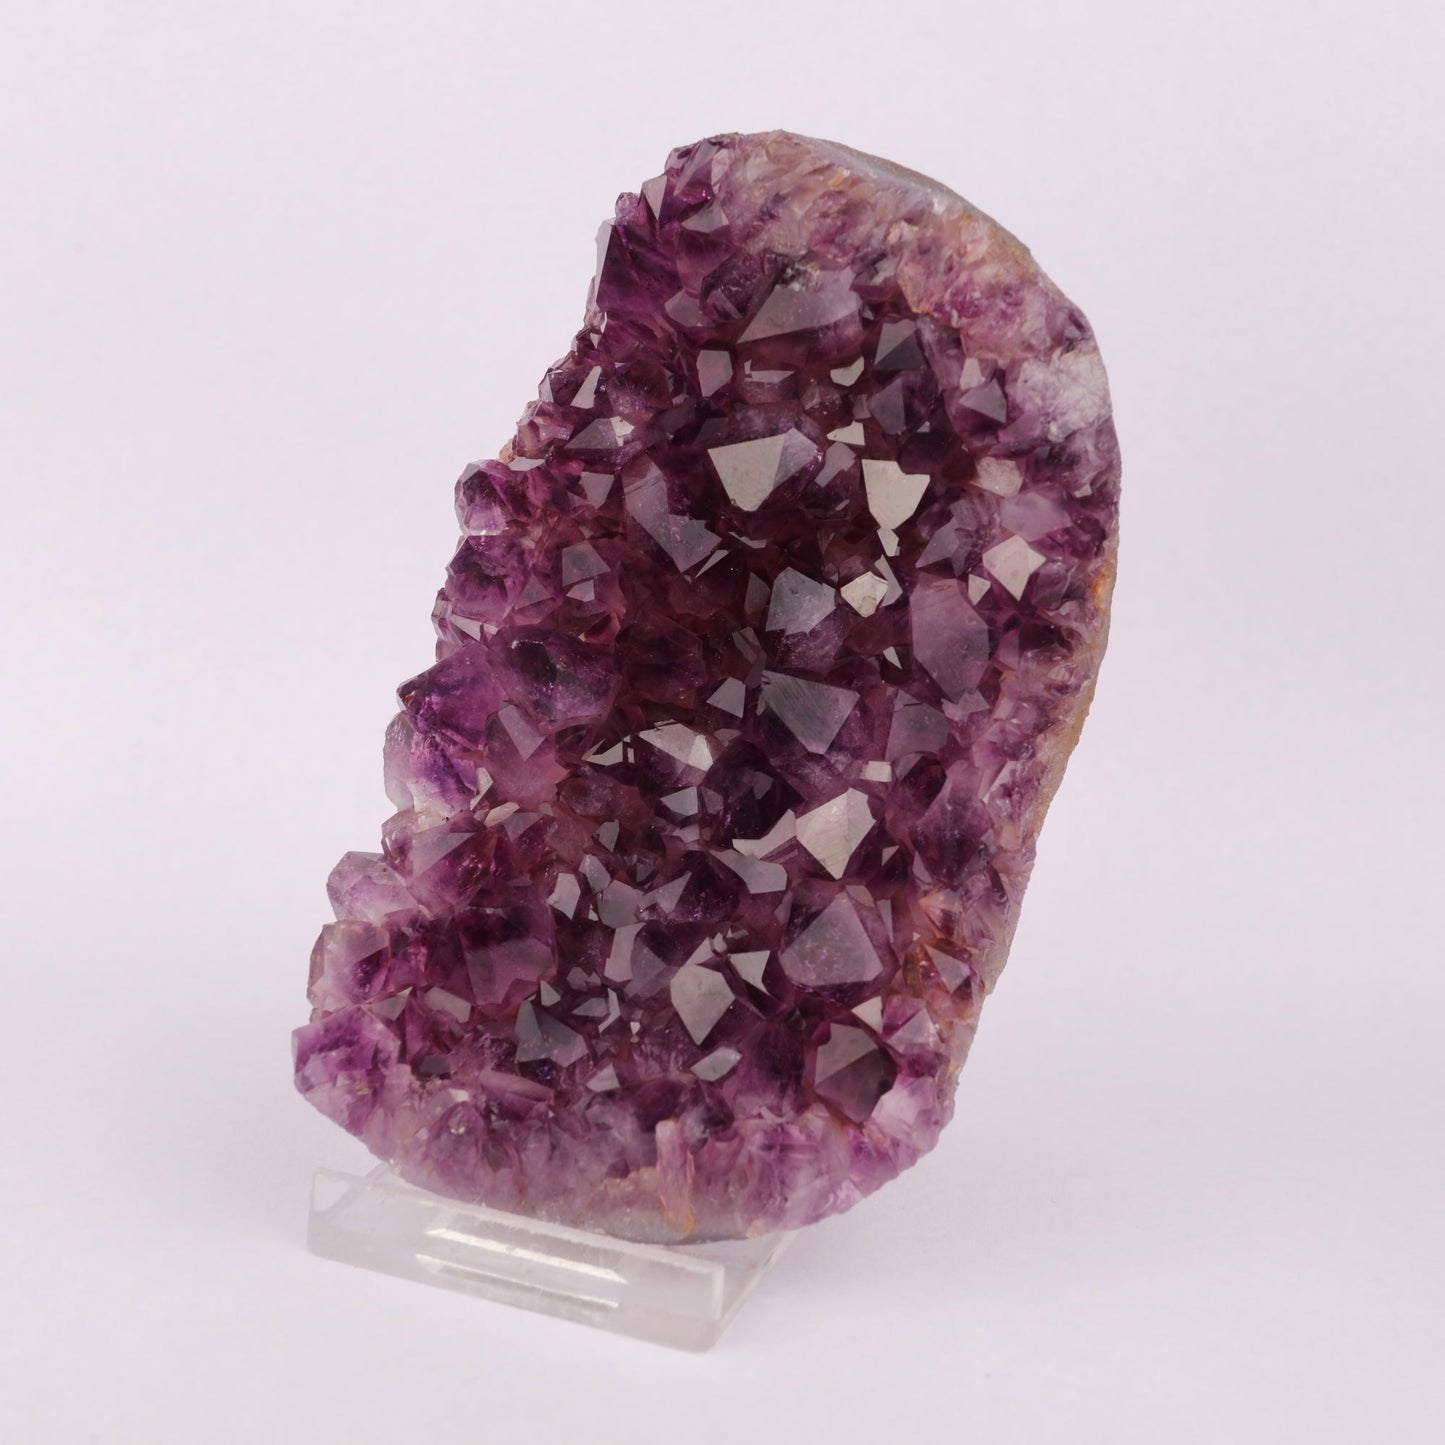 Amethyst Sprakling Crystals Natural Mineral Specimen # B 6225 Amethyst Superb Minerals 